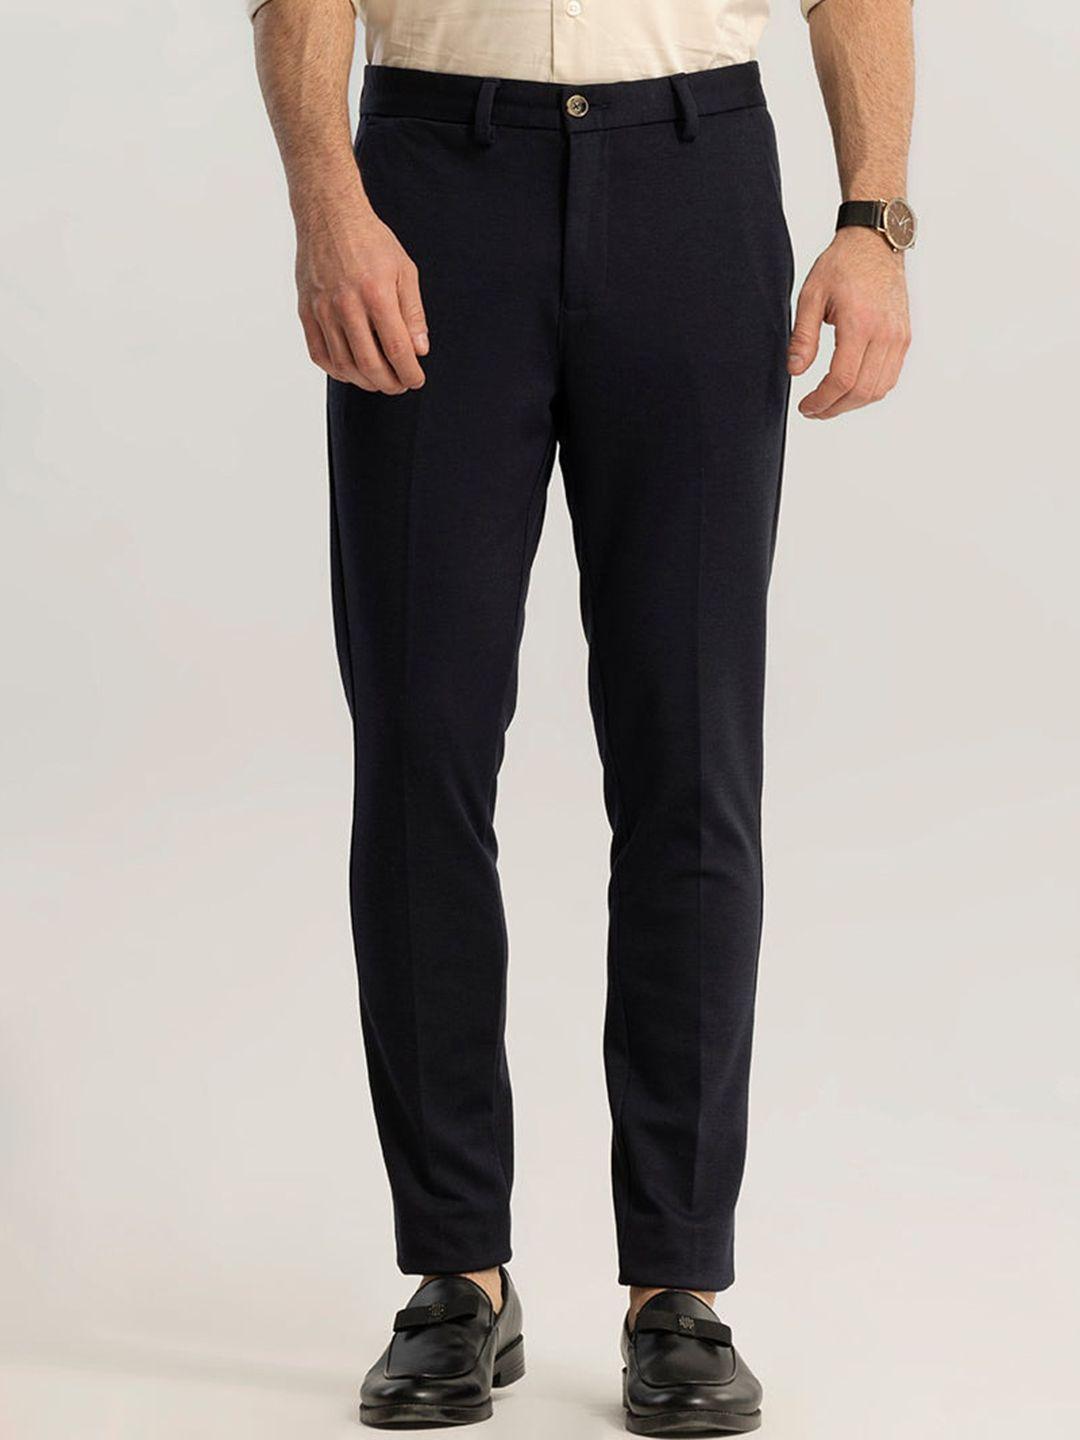 snitch-men-navy-blue-slim-fit-mid-rise-plain-cotton-formal-trousers